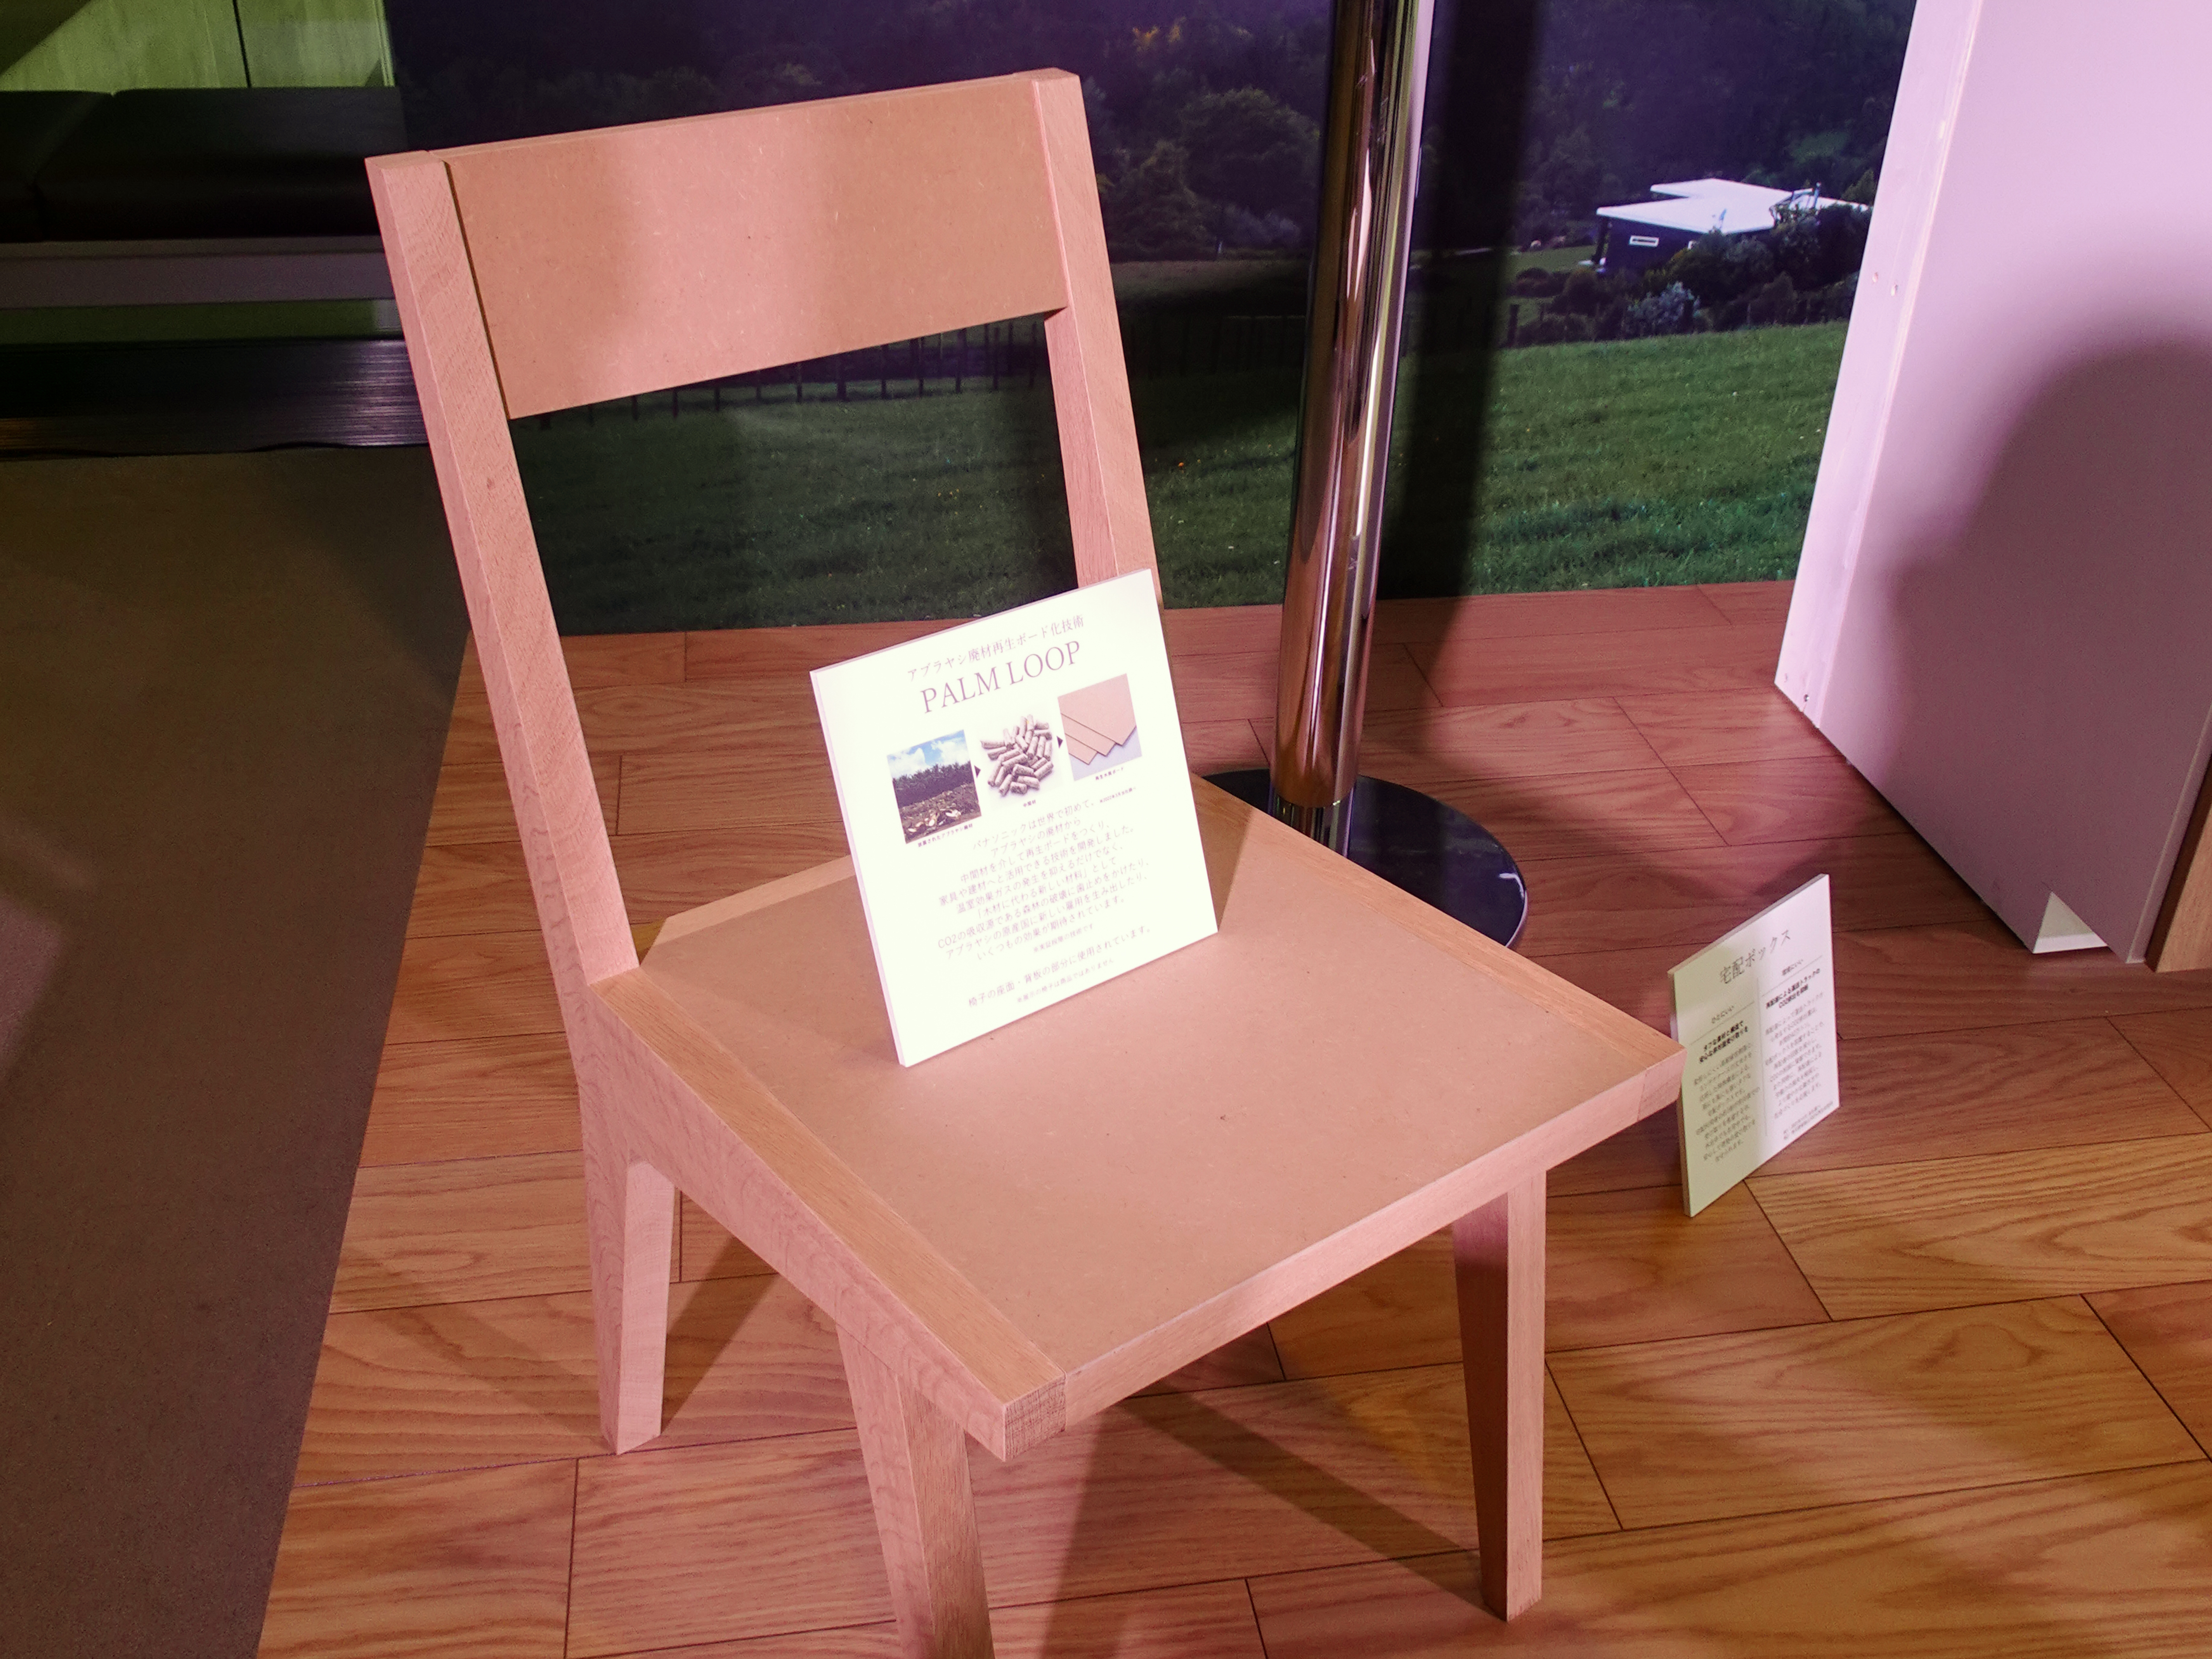 椅子の座面と背板の部分にアブラヤシ廃材再生ボード化技術「PALM LOOP」を使用